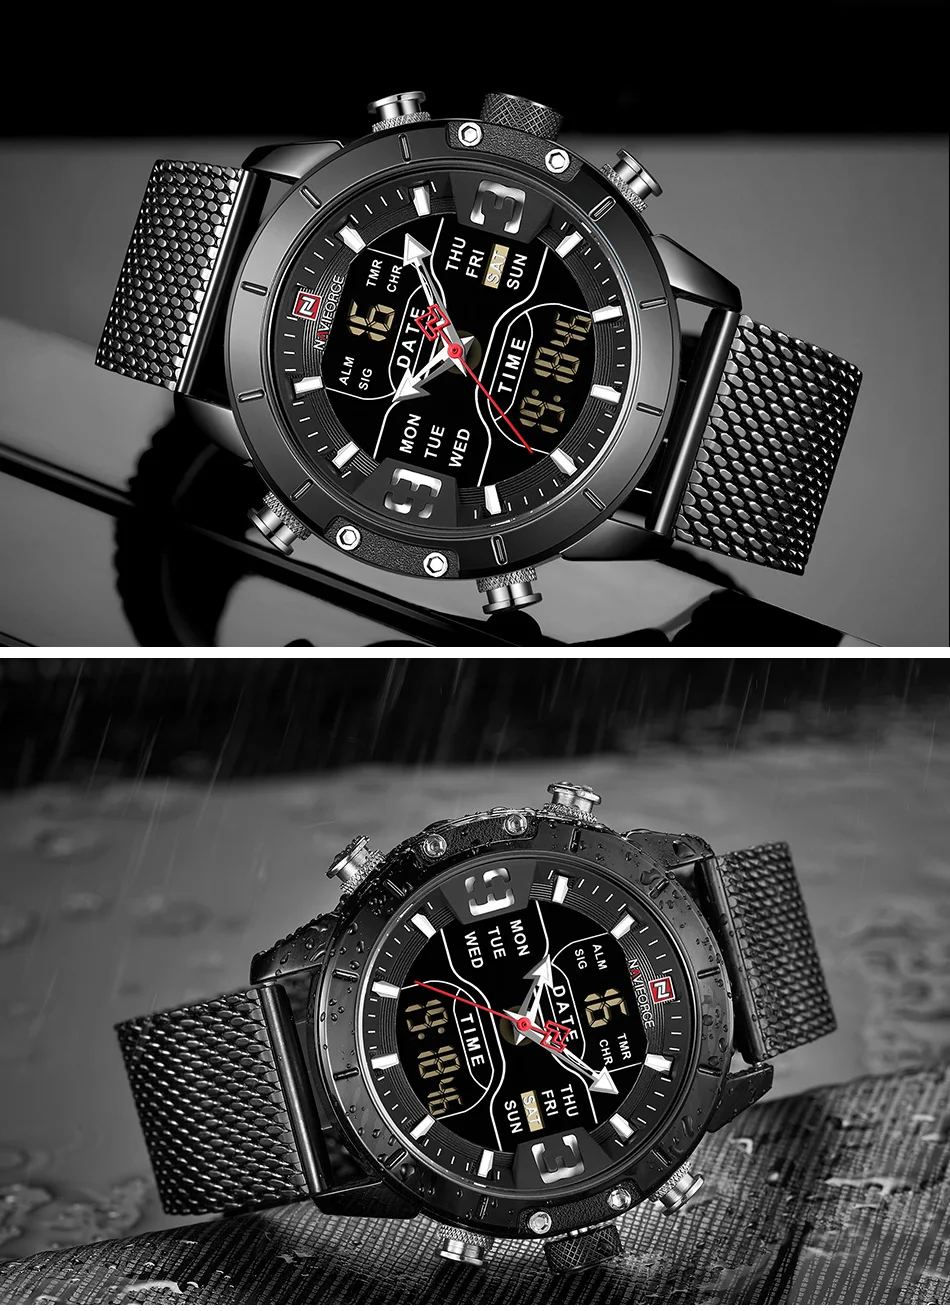 NAVIFORCE часы Топ люксовый бренд мужские военные кварцевые наручные часы из нержавеющей стали сетчатые спортивные часы аналогово-Цифровые мужские часы